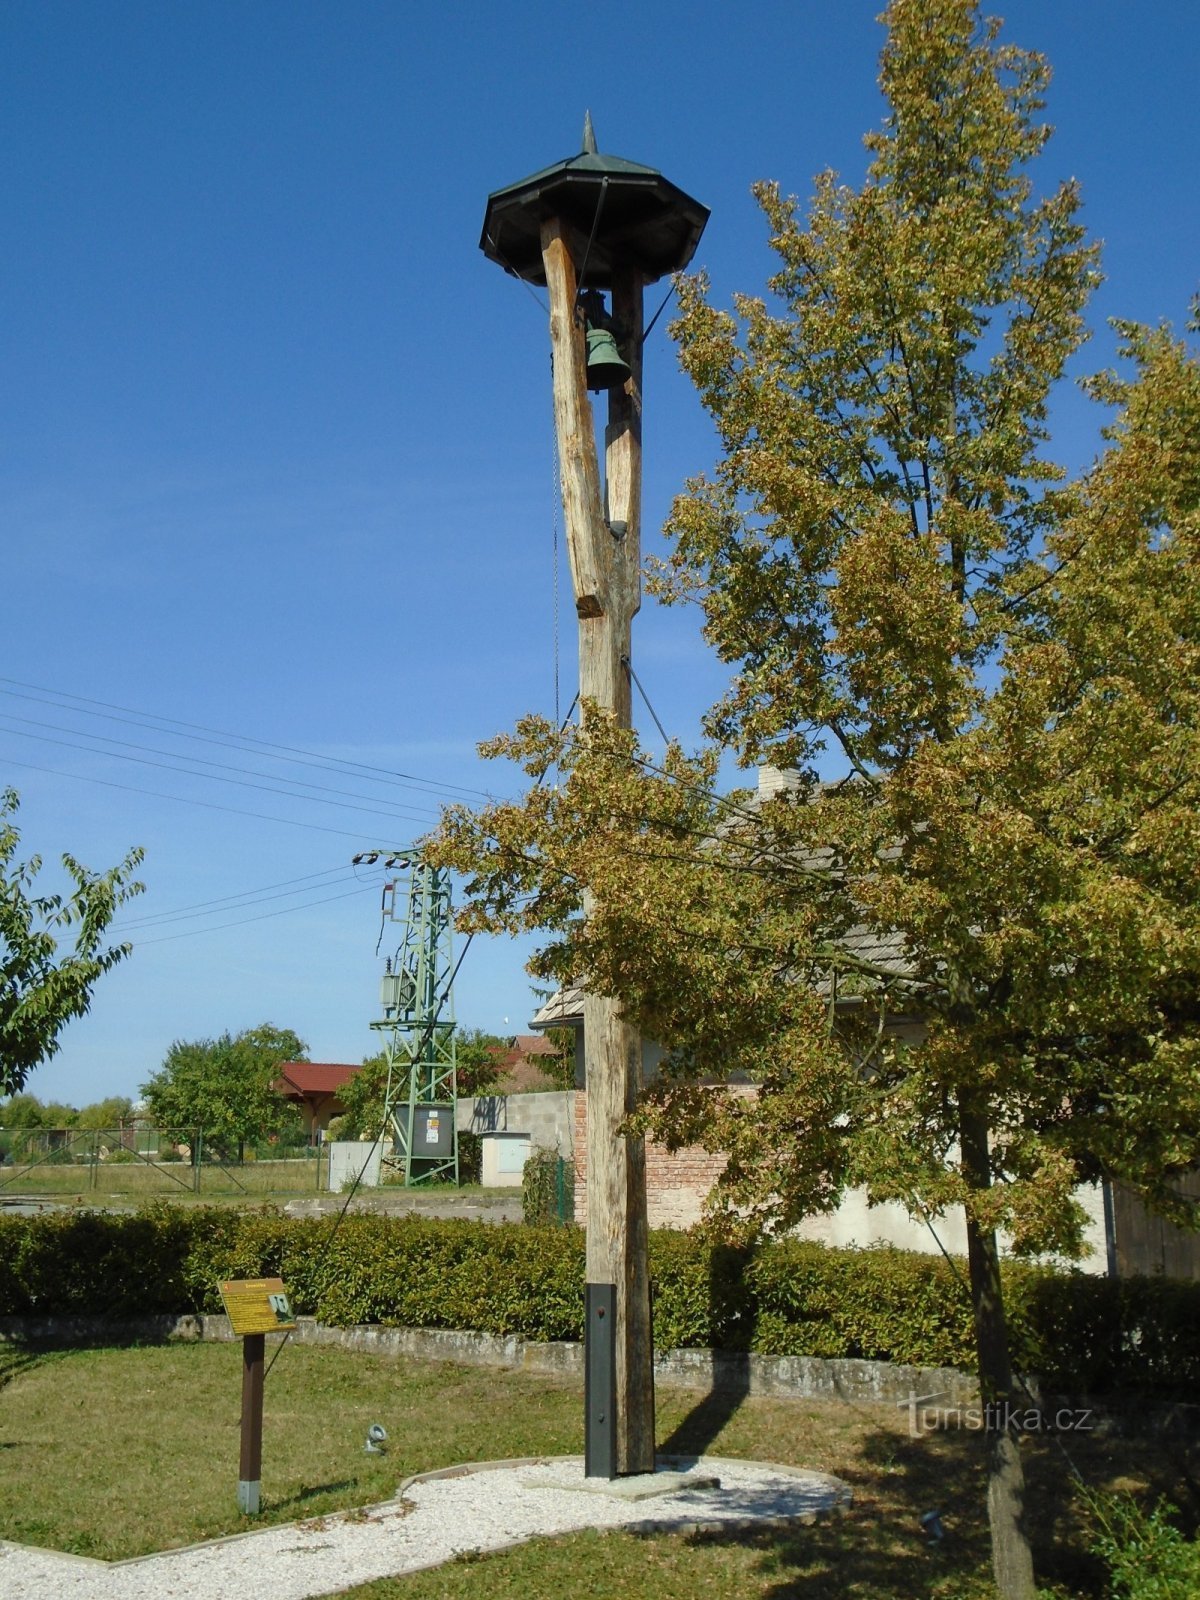 Glockenturm (Jílovice, 13.8.2018. August XNUMX)